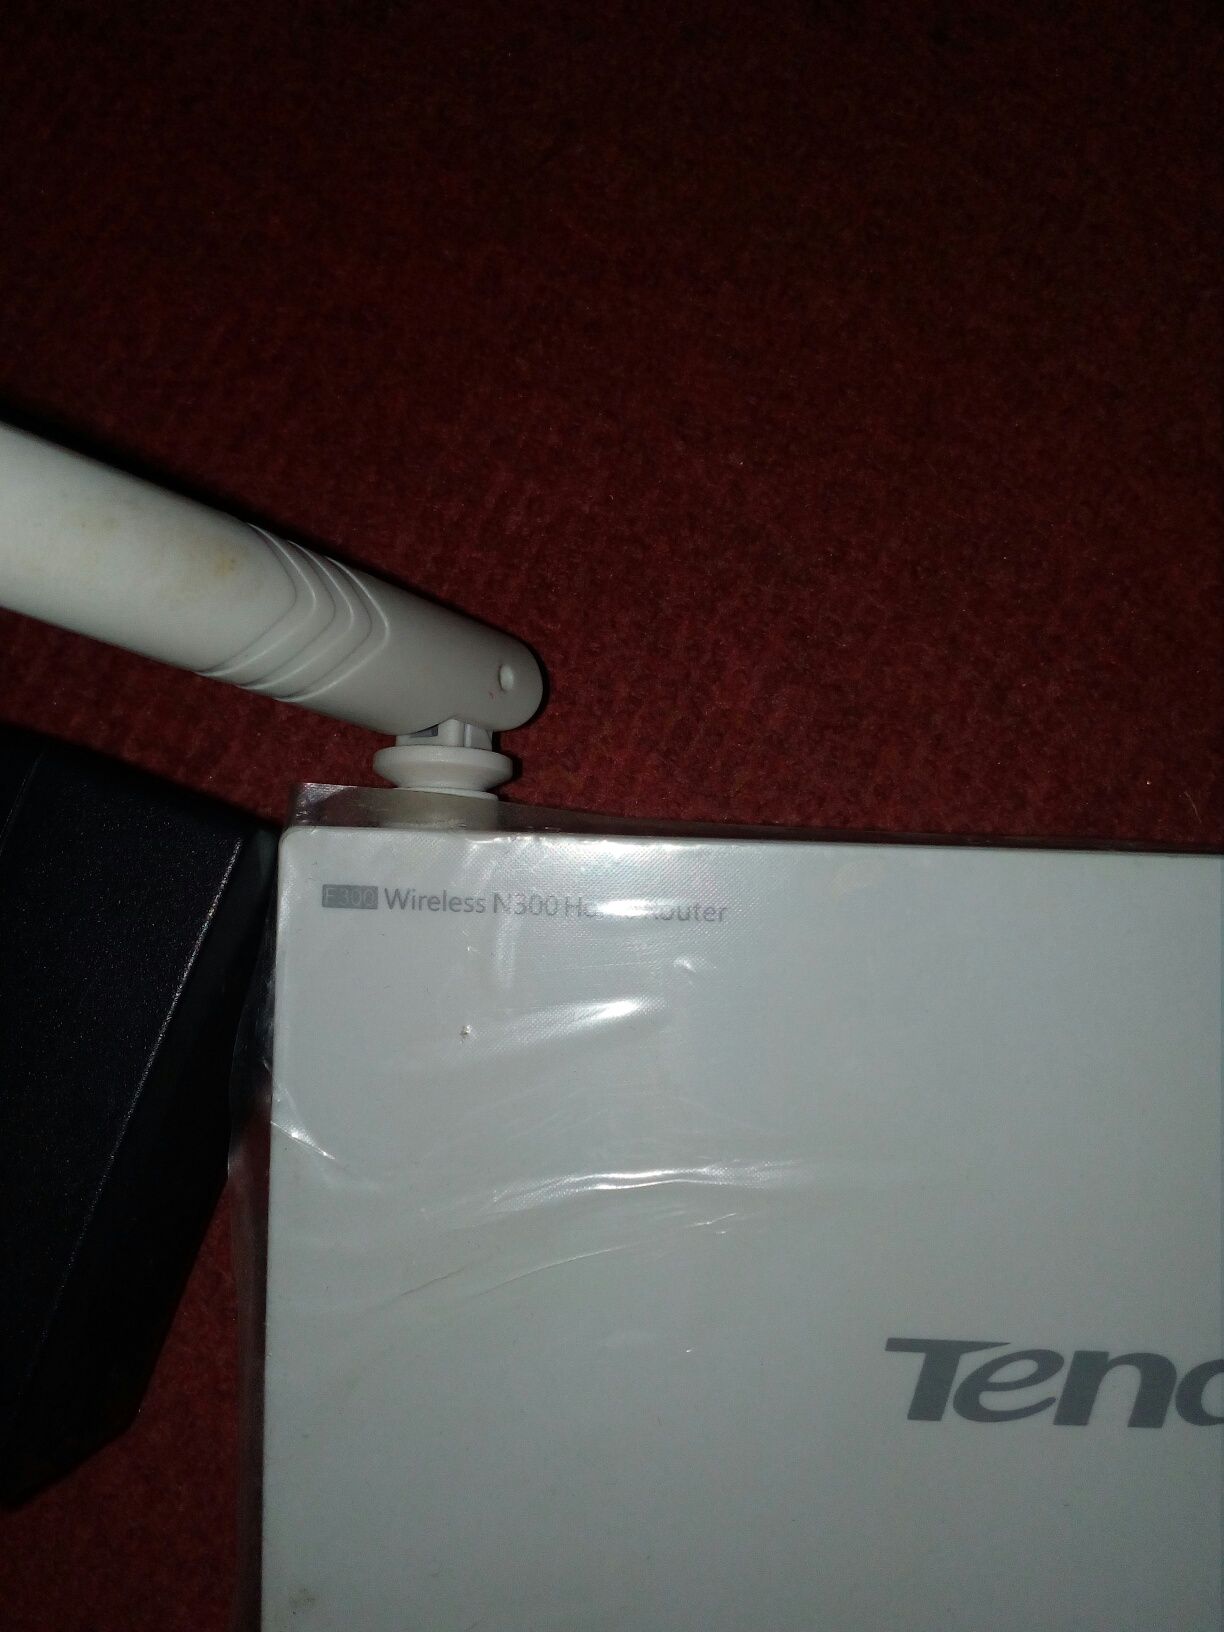 Router Tenda